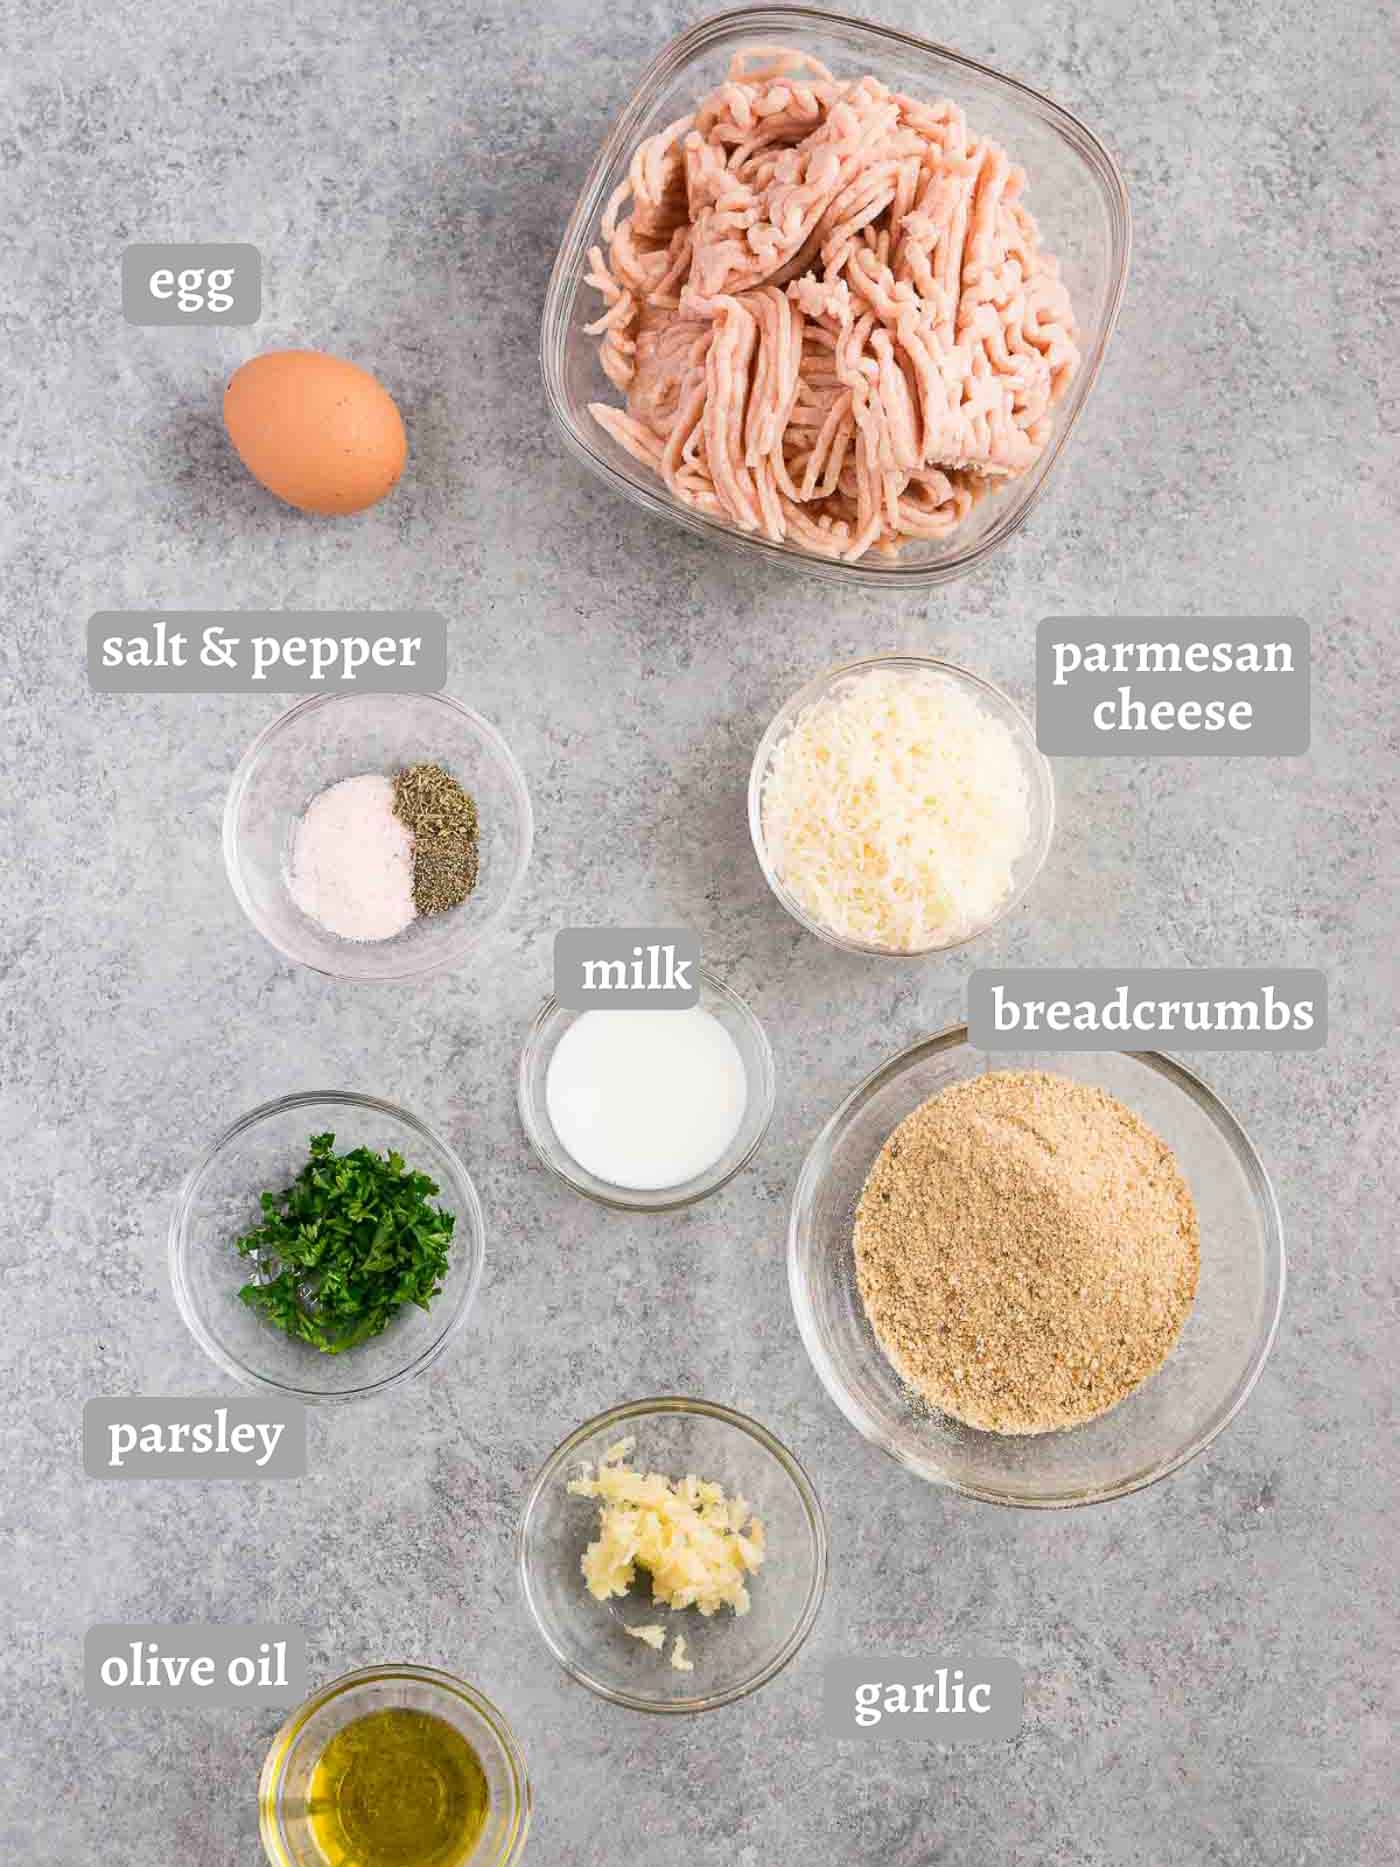 chicken meatballs ingredients